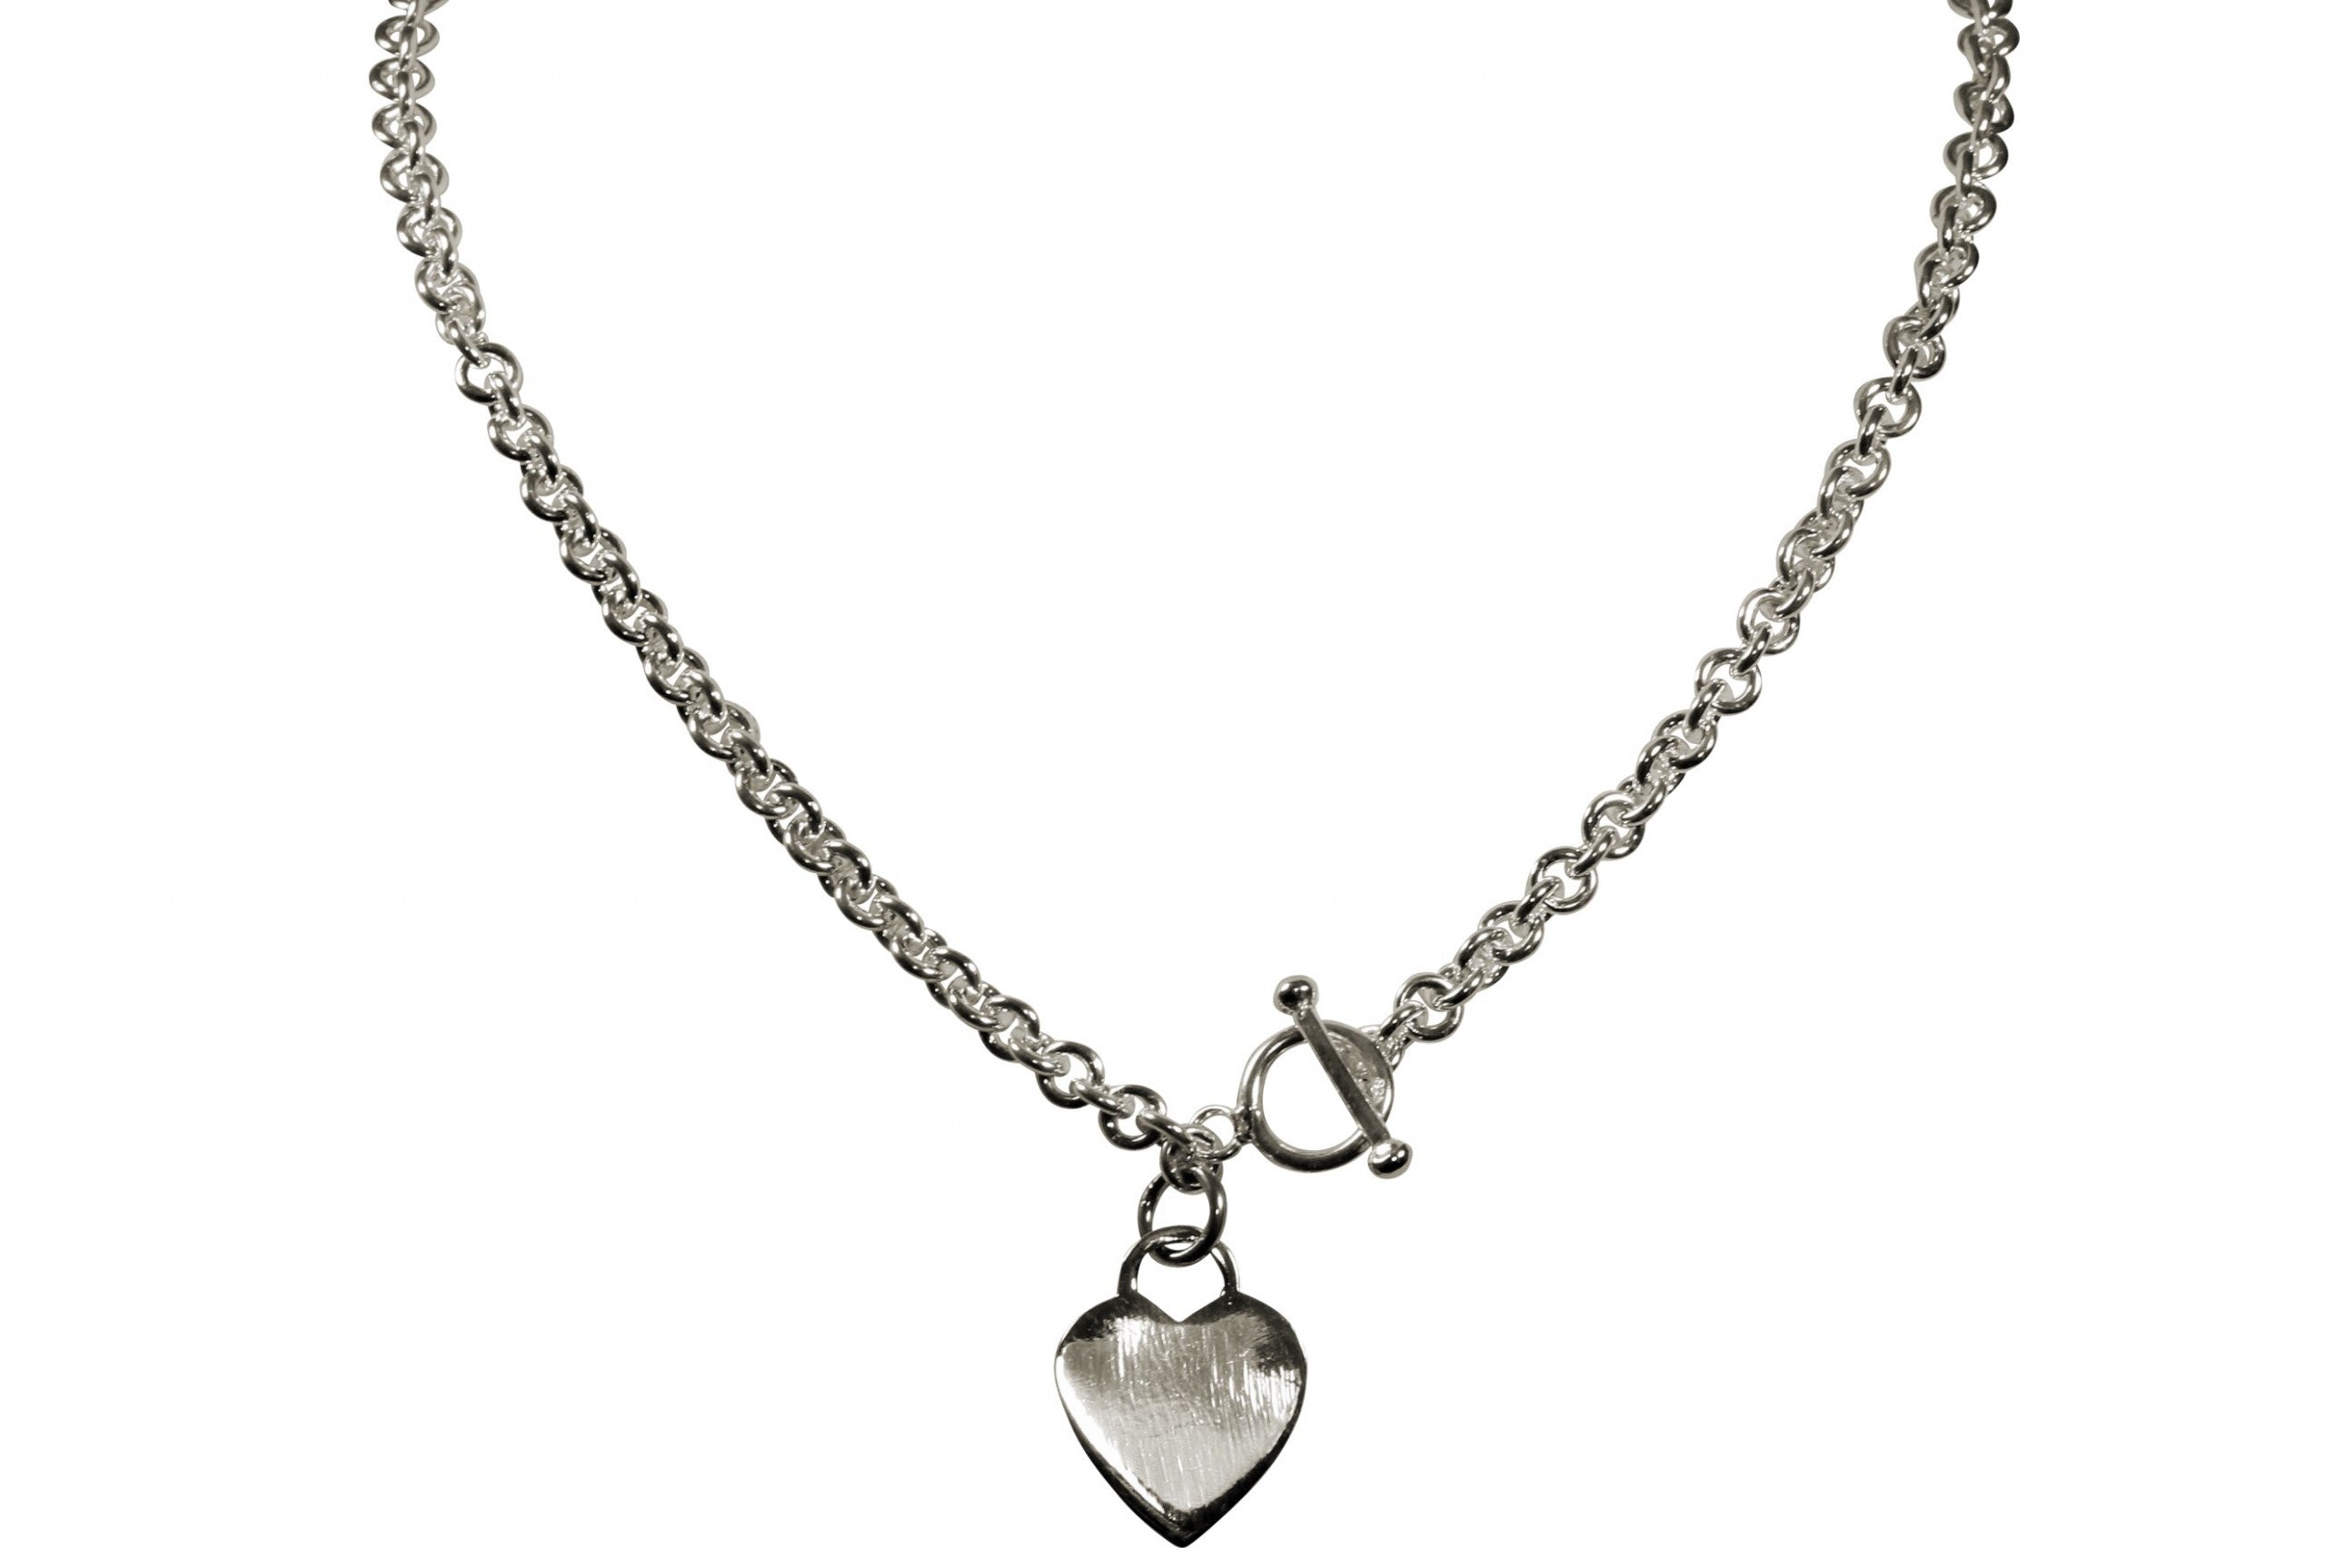 Eine klassische Kette für Damen aus Silber mit einem dekorativen Herz und einem Knebelverschluss.